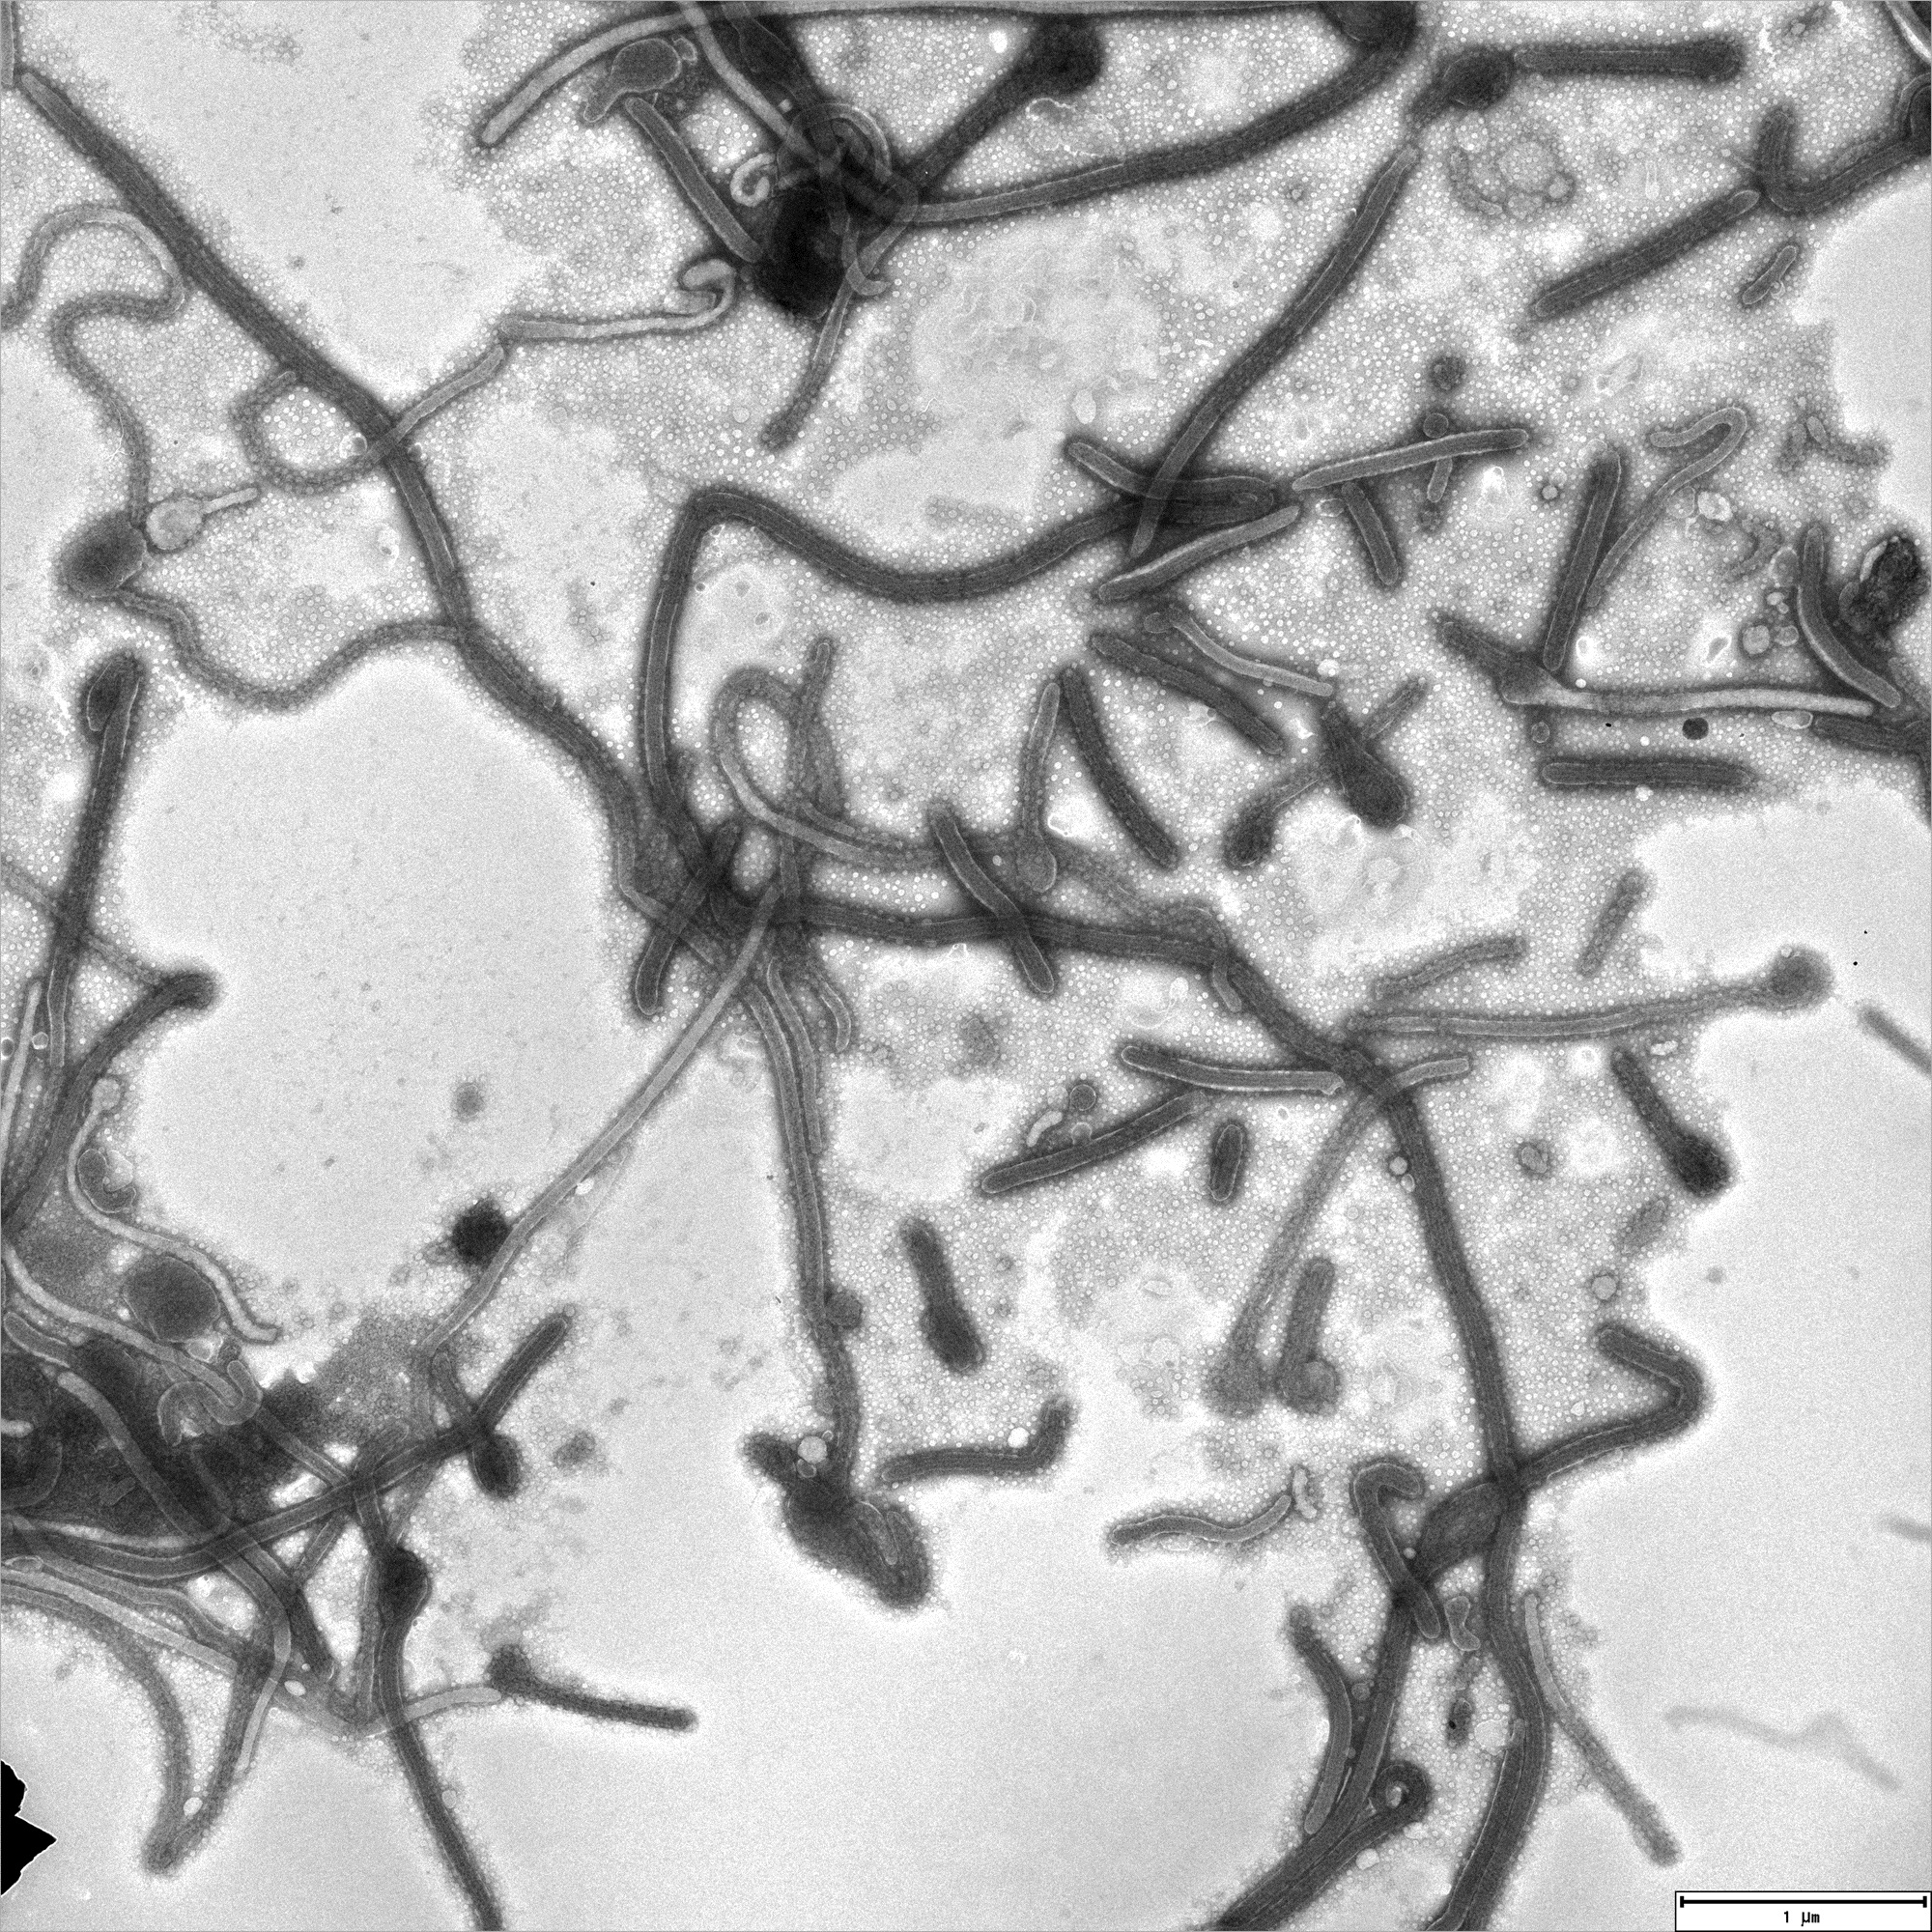 Elektronenmikroskopische Aufnahme von Ebolaviren aus dem aktuellen Ausbruch der Krankheit.